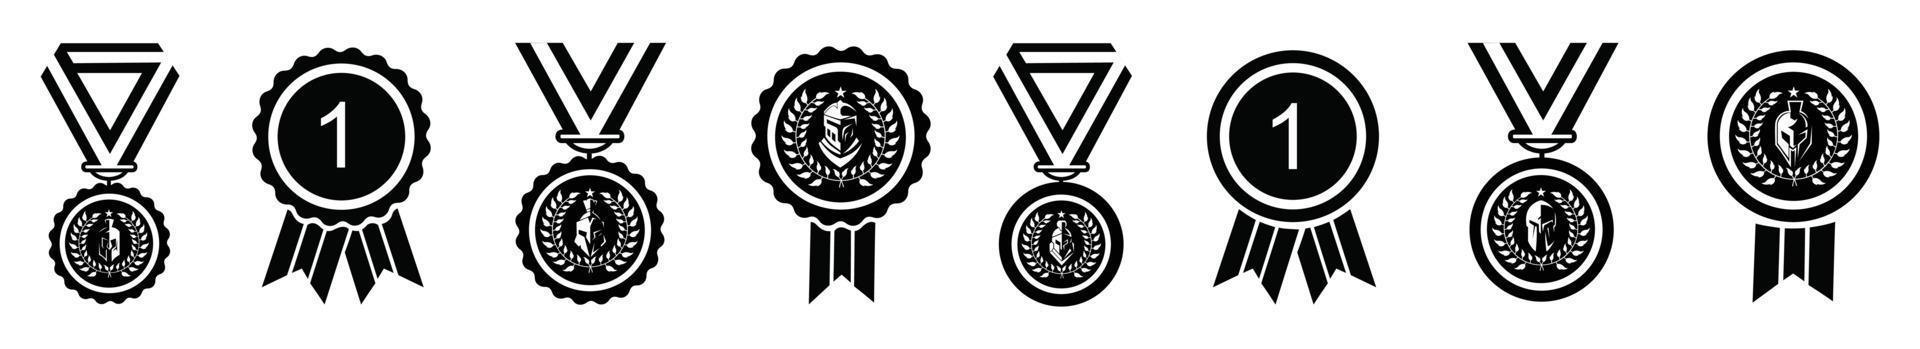 medalhão com capacete sparta espartano para vetor de design de logotipo de guerreiro grego